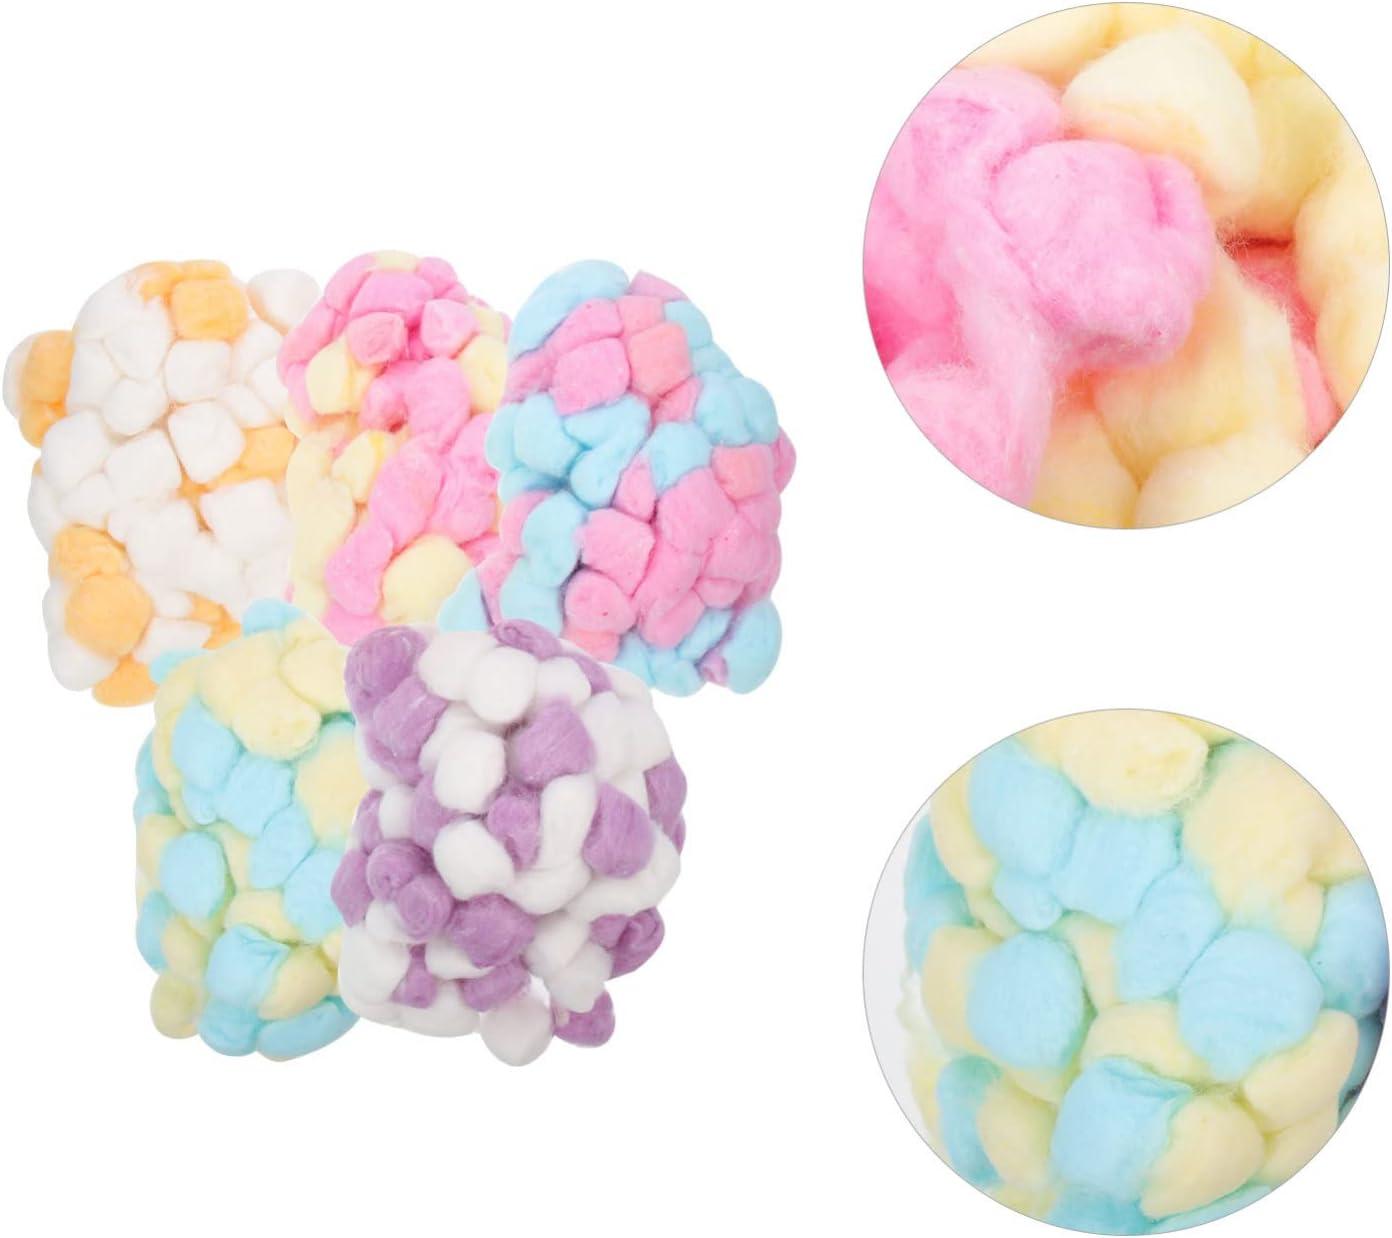 Sewroro 500pcs Colored Cotton Balls Small Pom Poms Degreasing